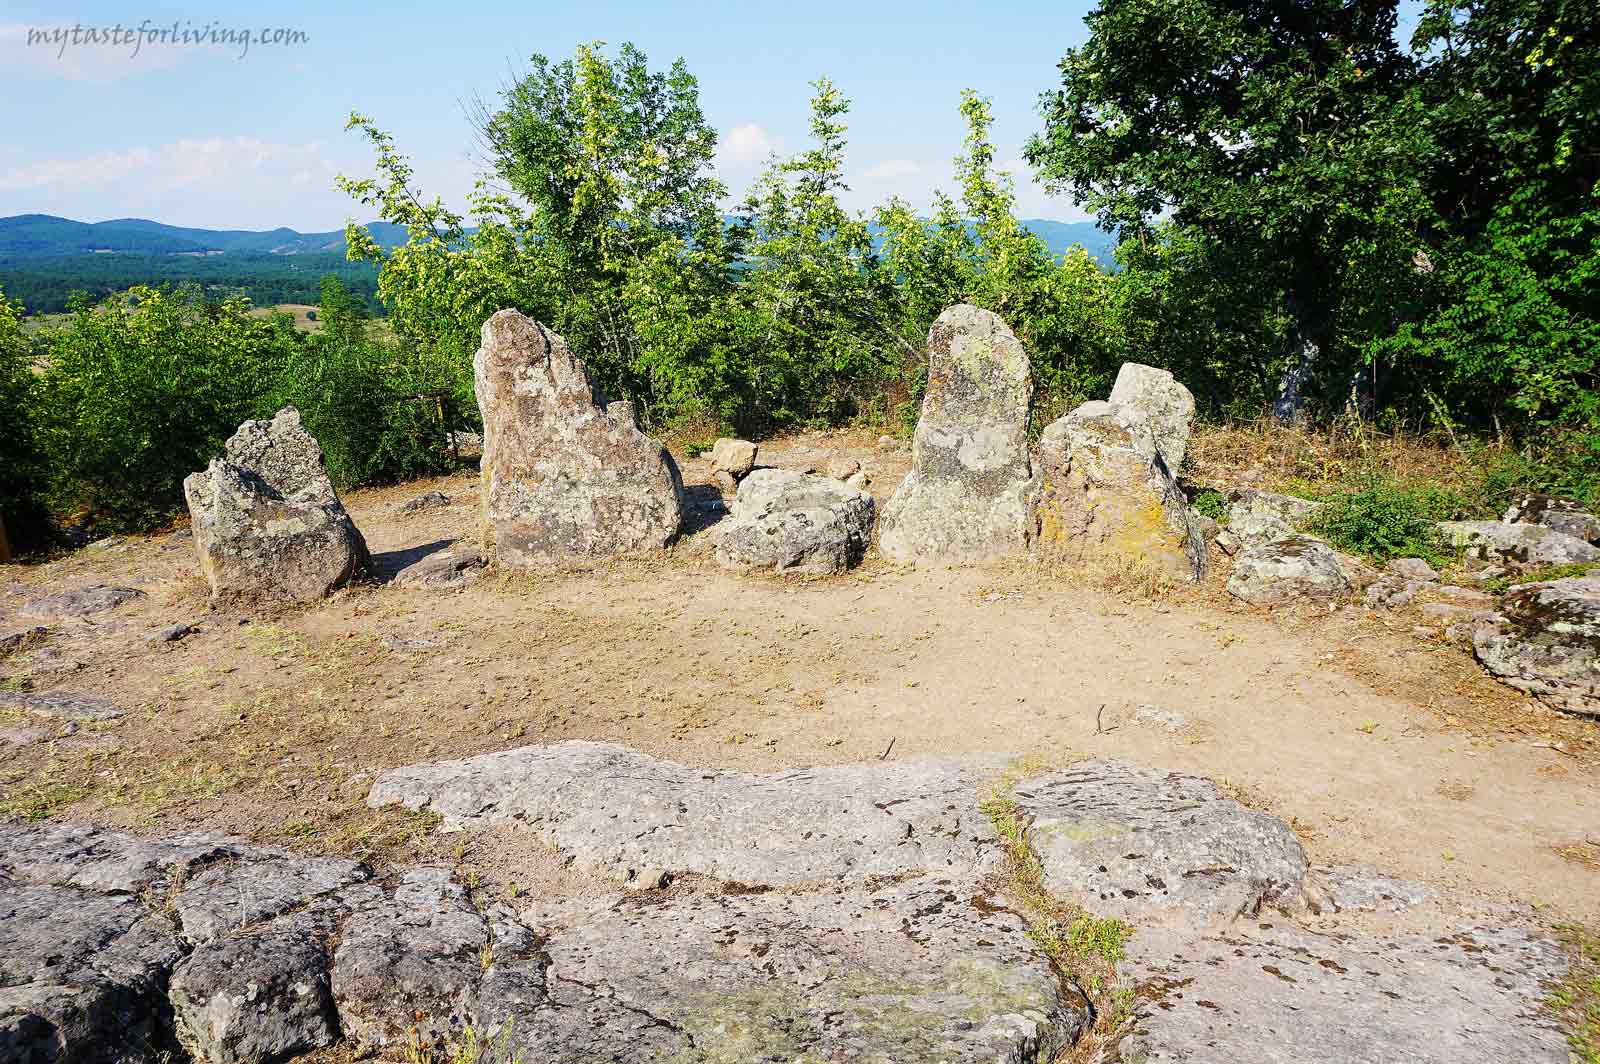 Най-добре запазеният кромлех в България се намира в Източните Родопи между селата Долни Главанак и Тополово, община Маджарово. Наричат го още българския Стоунхендж. Представлява 15 пирамидални побити камъка, подредени в приблизителна окръжност, с различна височина, като най-високите камъни са с височина 1,5 м.